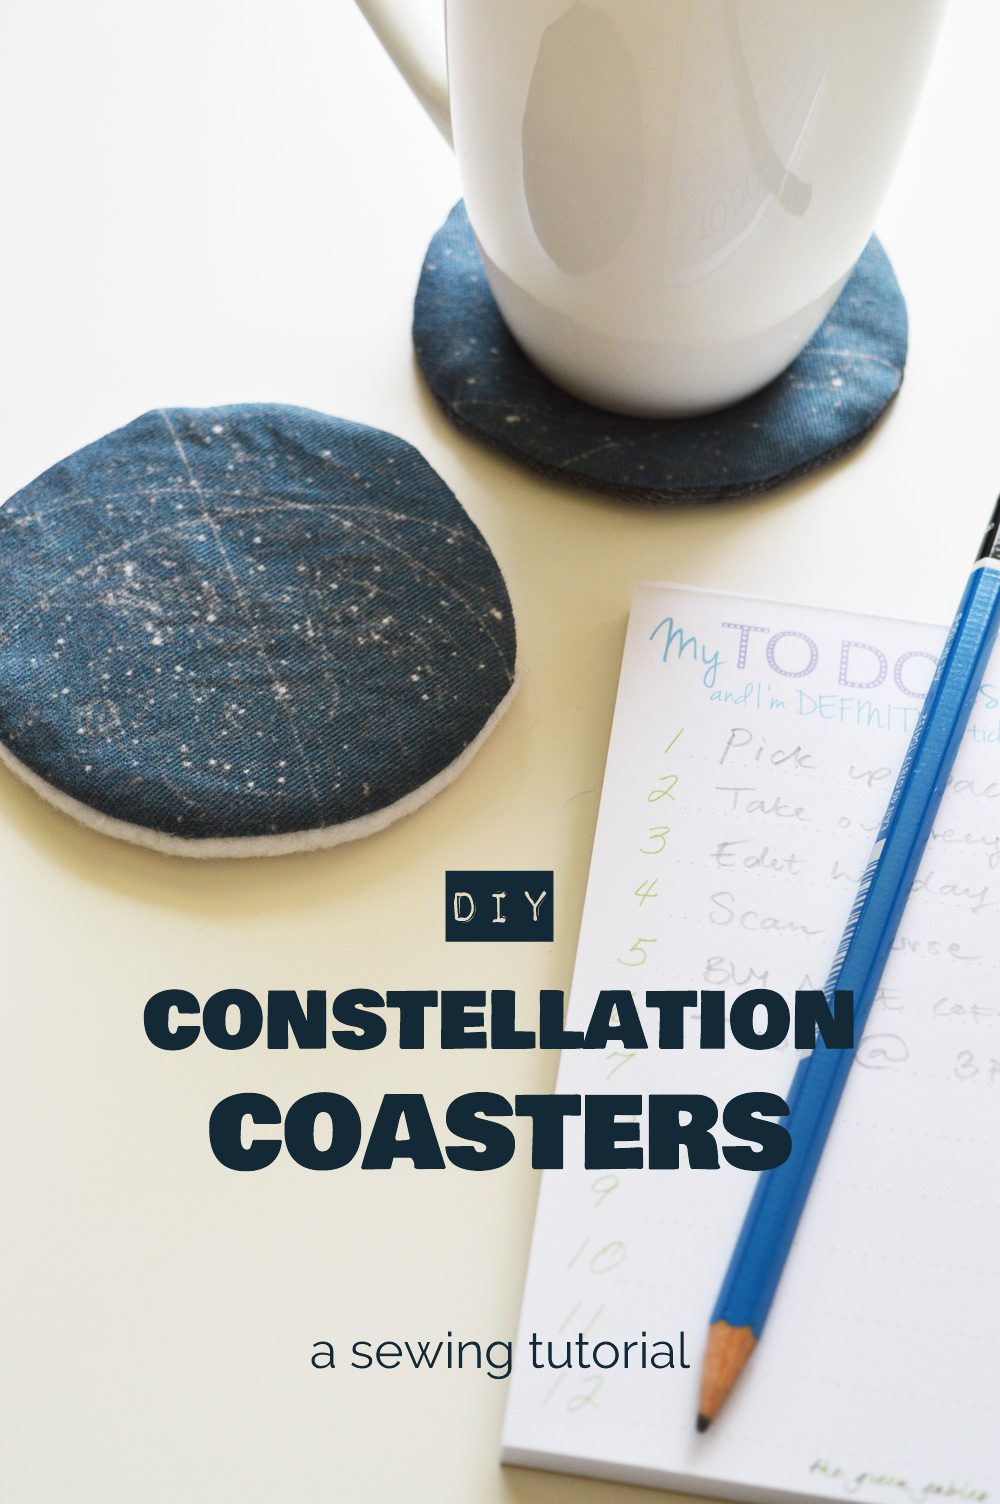 DIY constellation coasters tutorial 